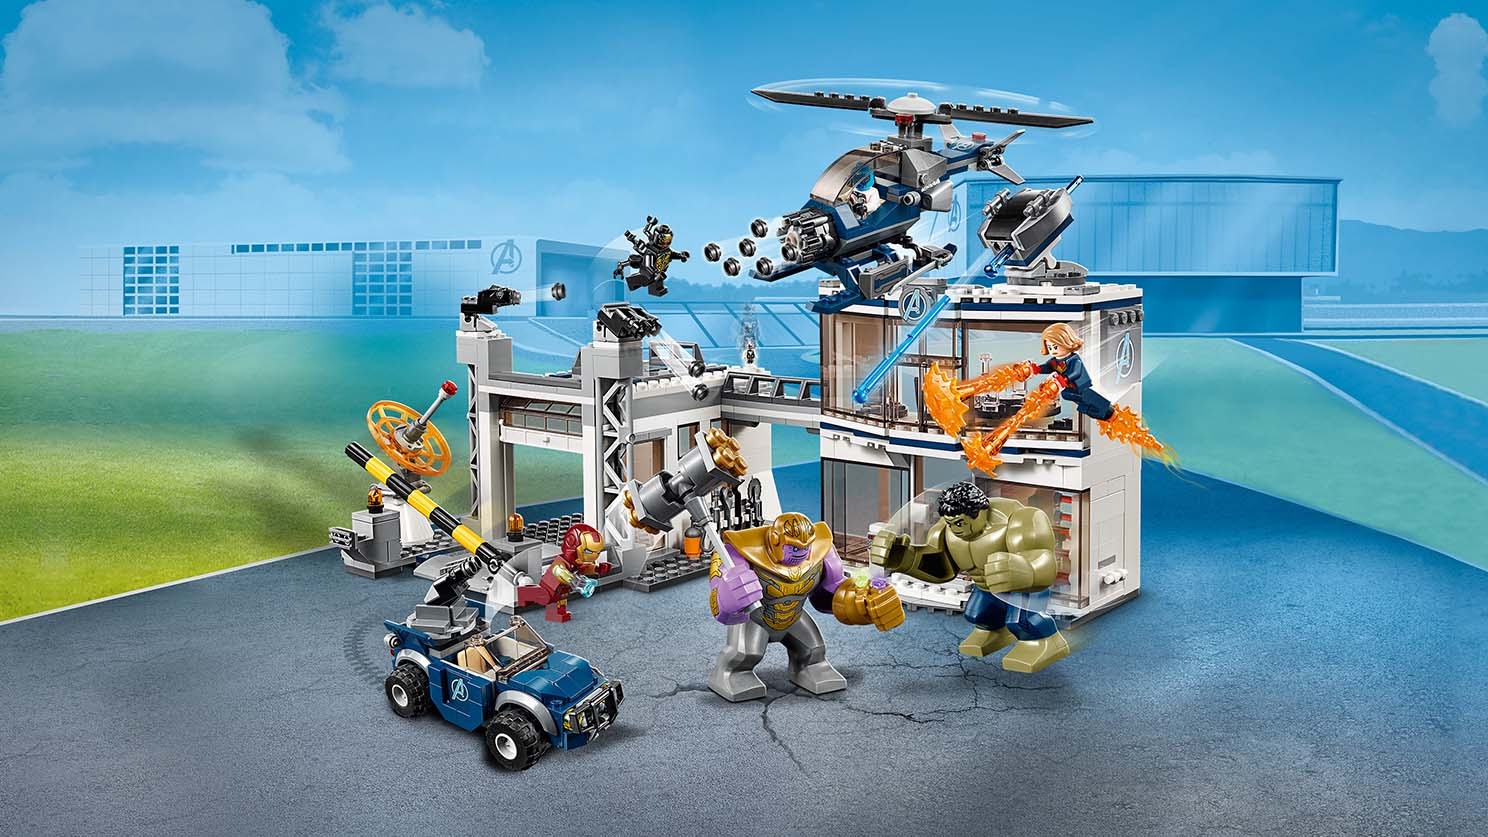 Avengers Compound Battle 76131 - LEGO® Marvel Sets - LEGO.com for kids